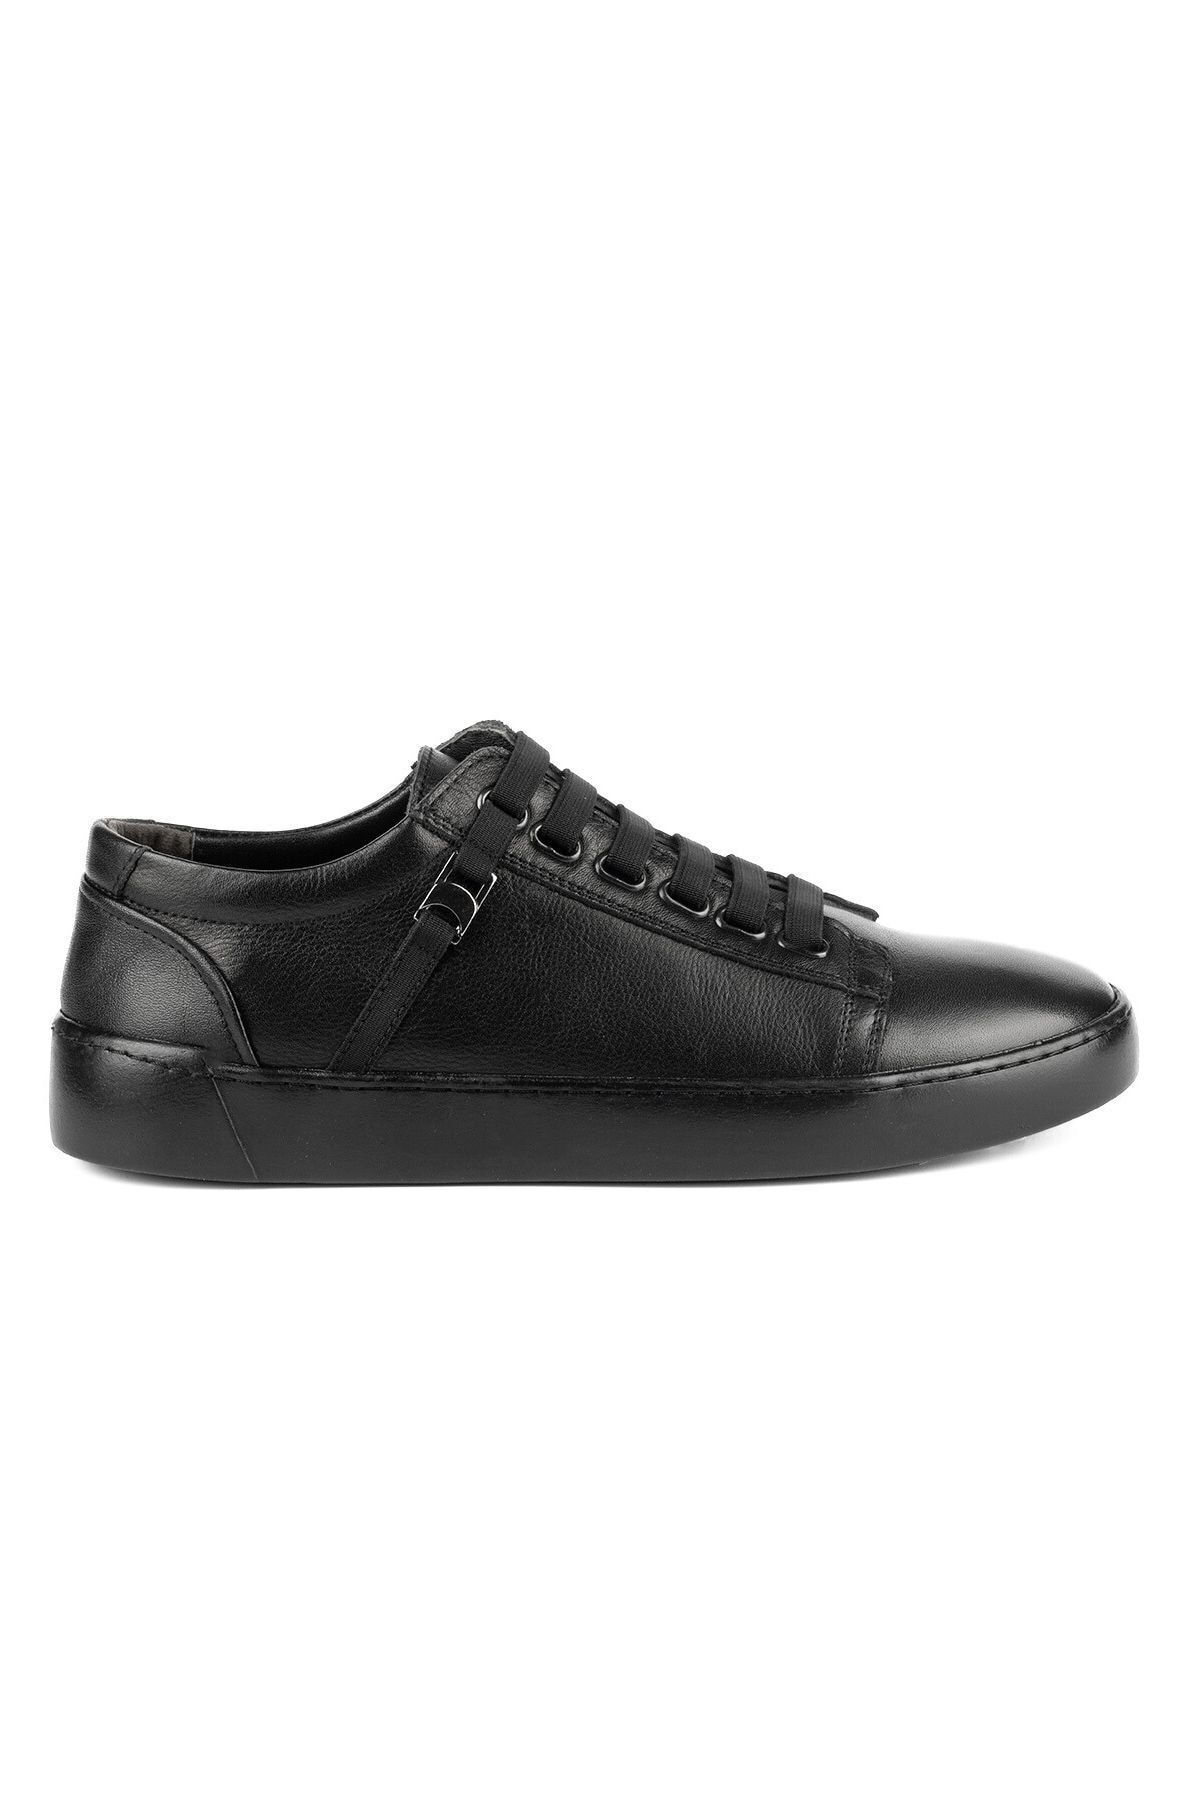 Tripy Hakiki Deri Erkek Lastik Bağcıklı Büyük Numara Siyah Günlük Sneaker Ayakkabı